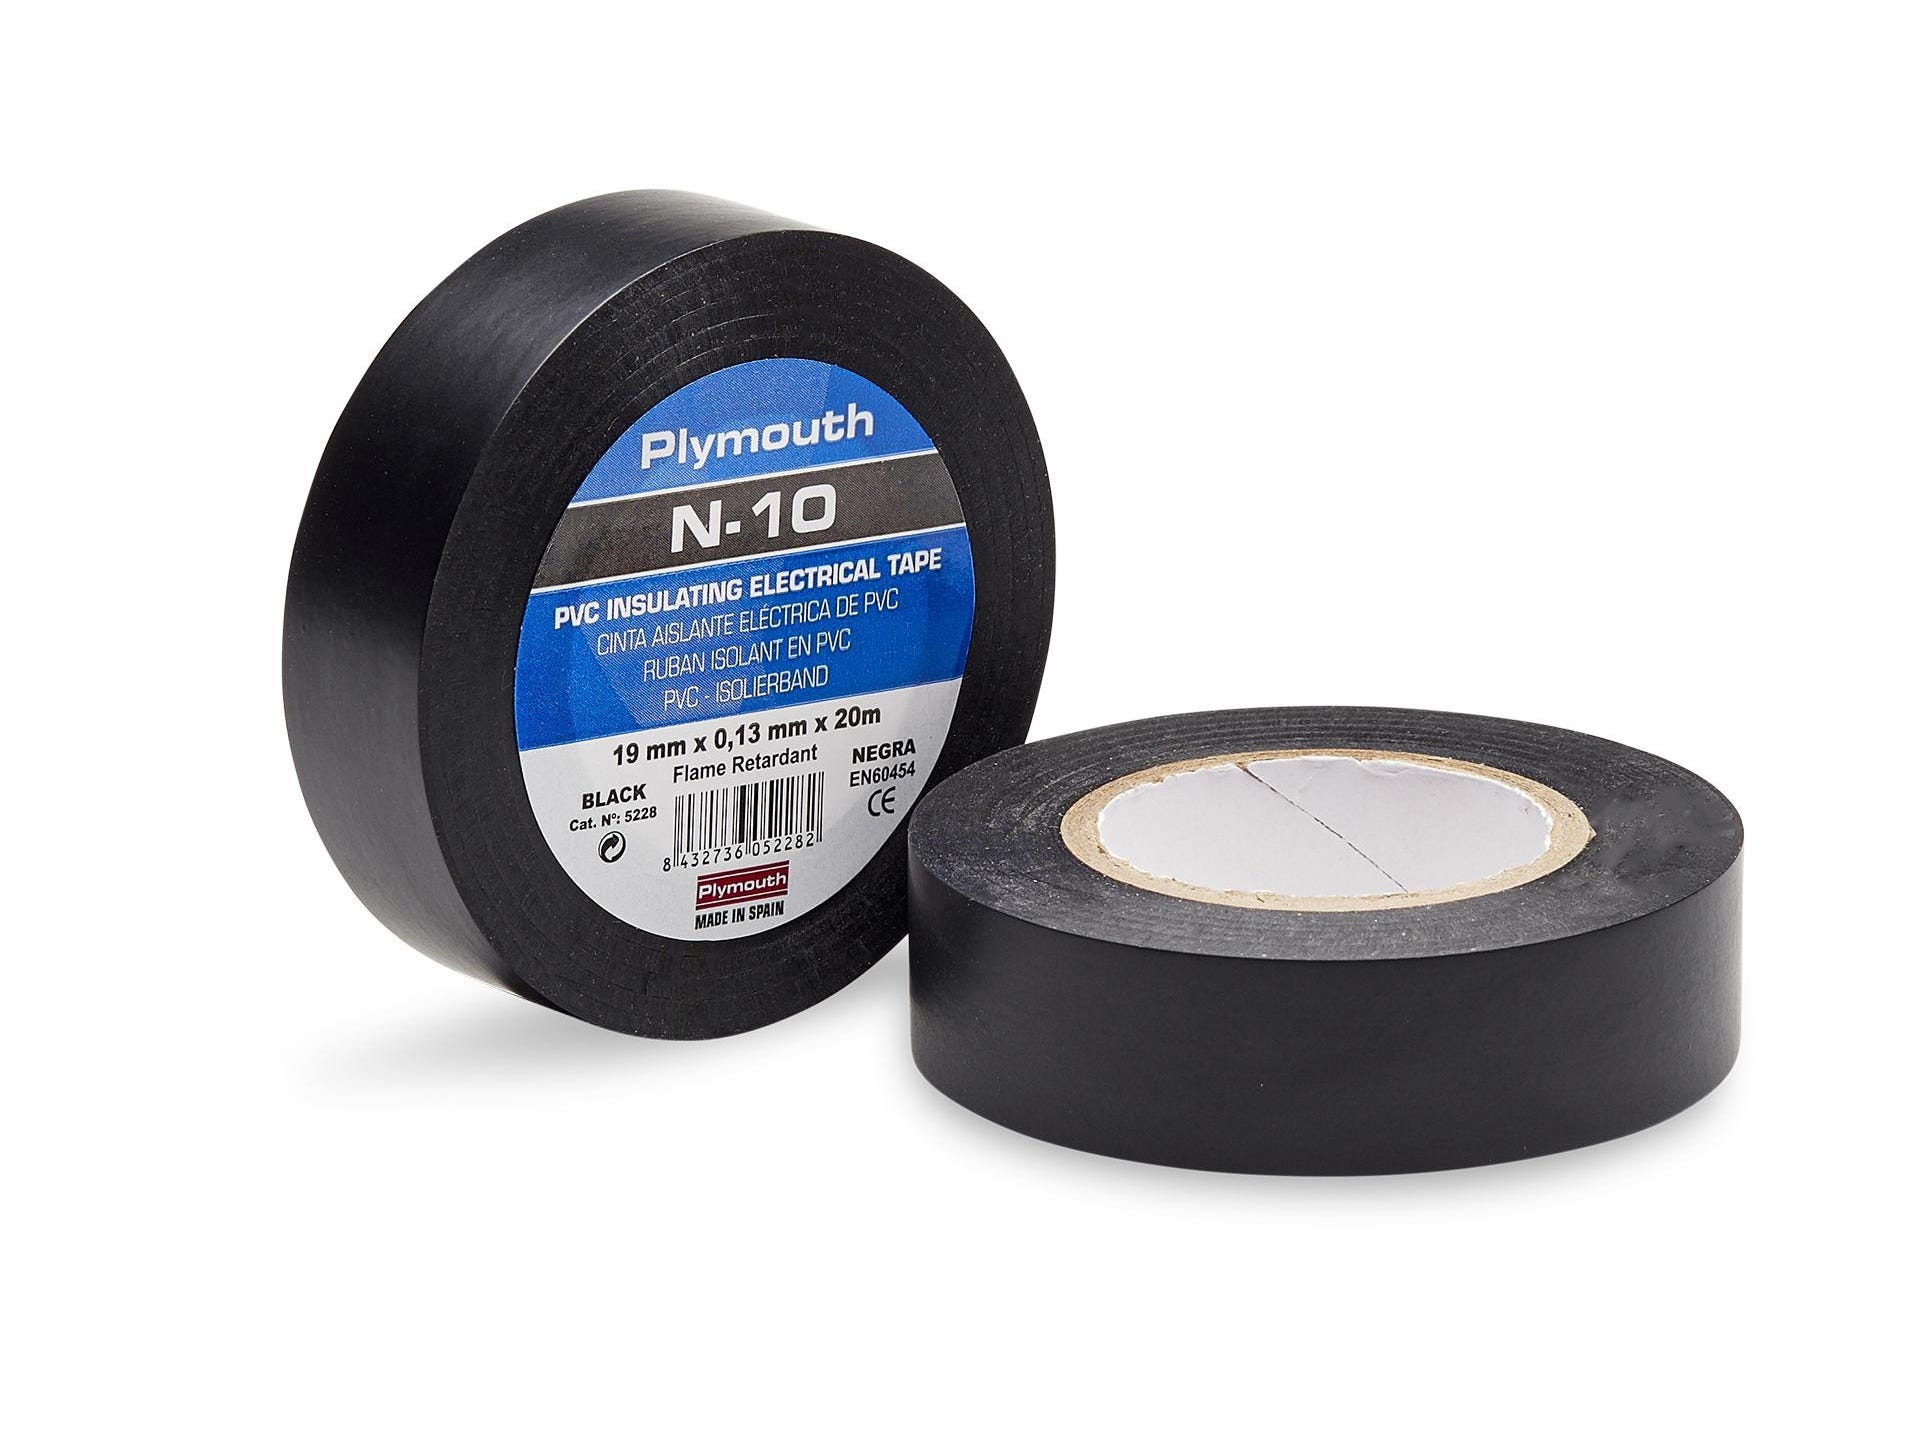 Ruban adhésif en PVC N-10 20mx19x0,13mm noir pour applications électriques  - PLYMOUTH